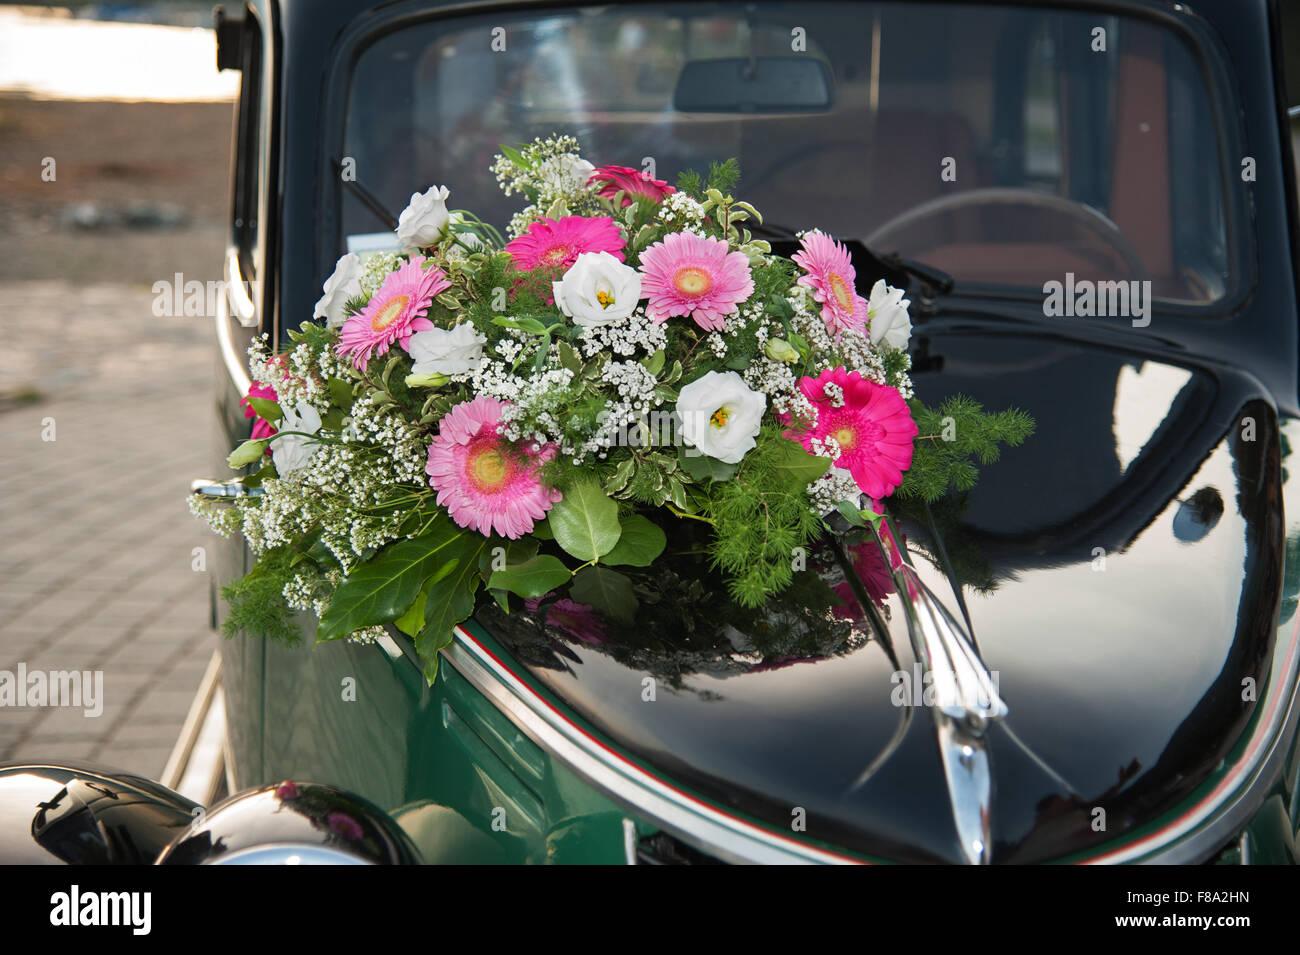 https://c8.alamy.com/compfr/f8a2hn/le-bouquet-de-mariage-voiture-de-mariage-vintage-f8a2hn.jpg